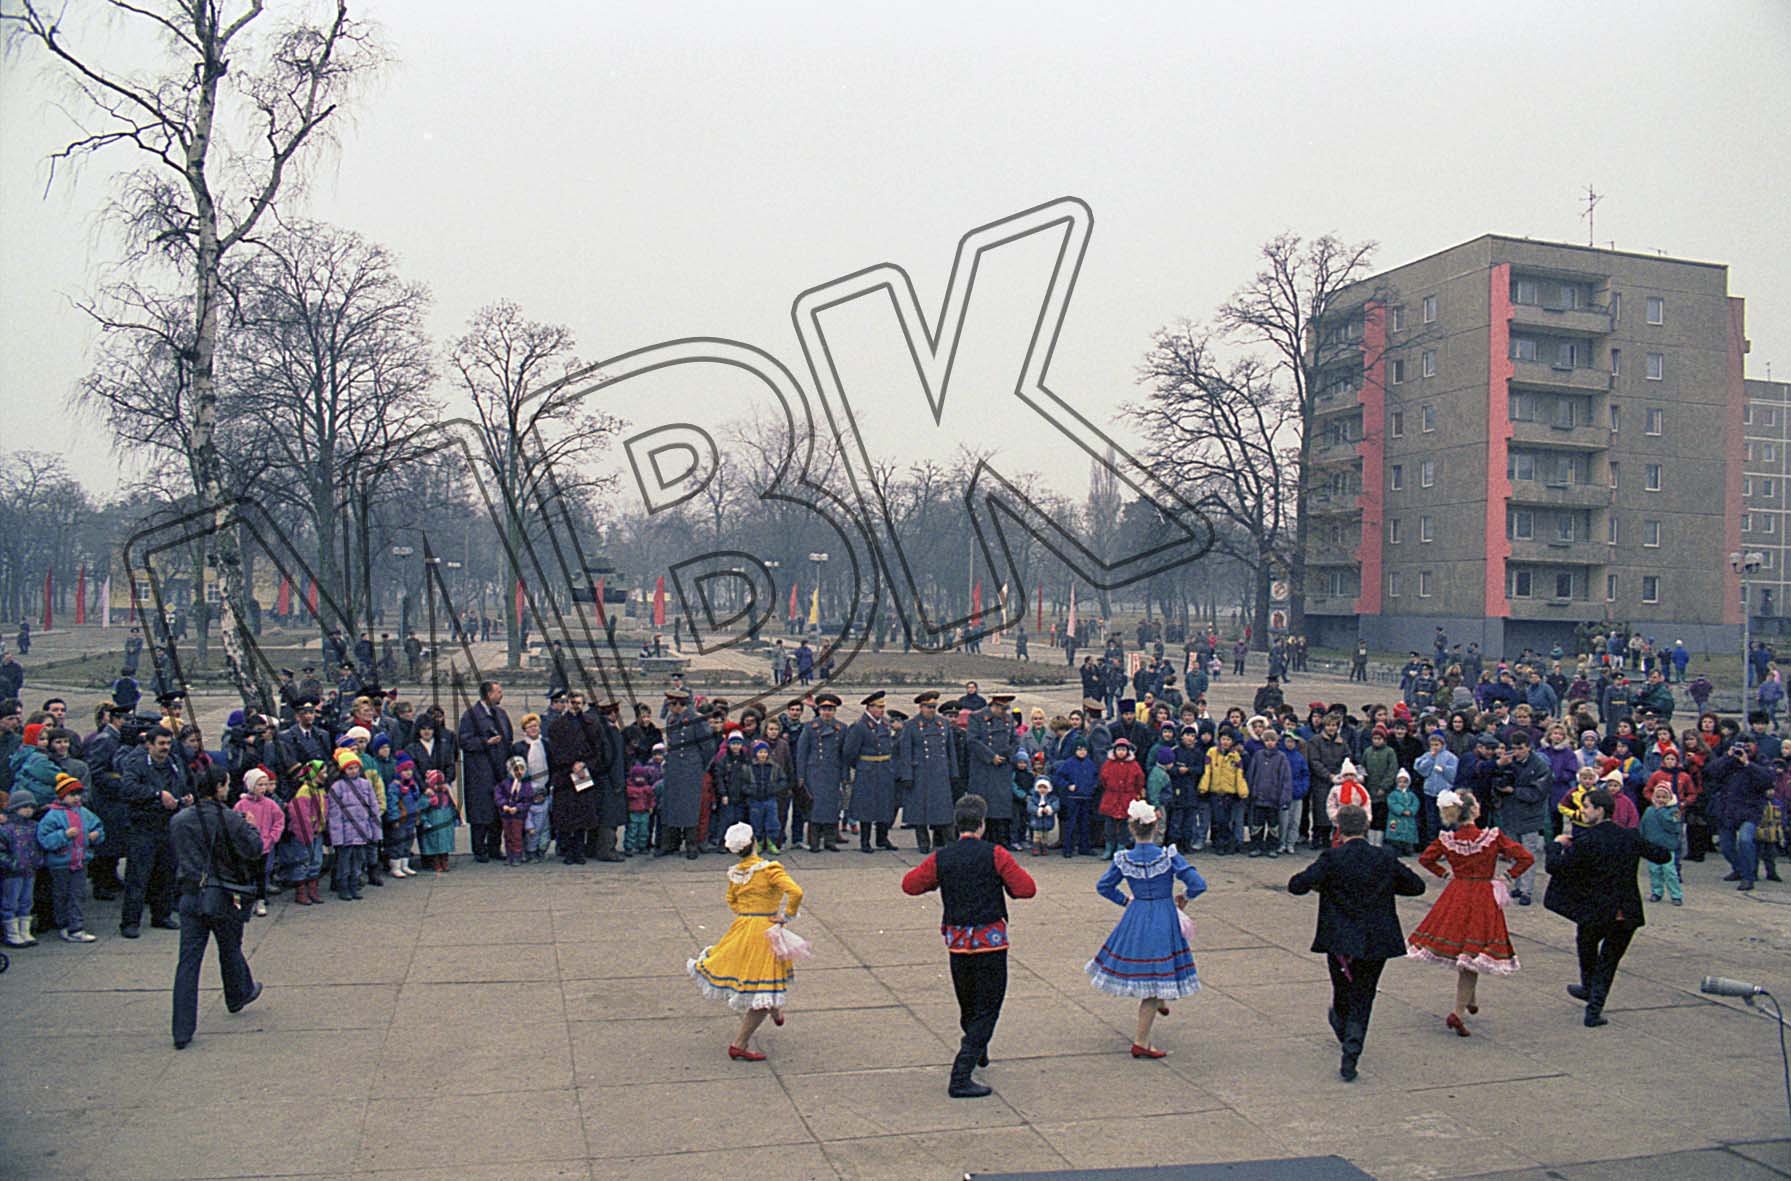 Fotografie: Feierlichkeiten zum 50. Jahrestag der Gründung der 10. Garde-Panzerdivision, Altengrabow, 26. Februar 1993 (Museum Berlin-Karlshorst RR-P)